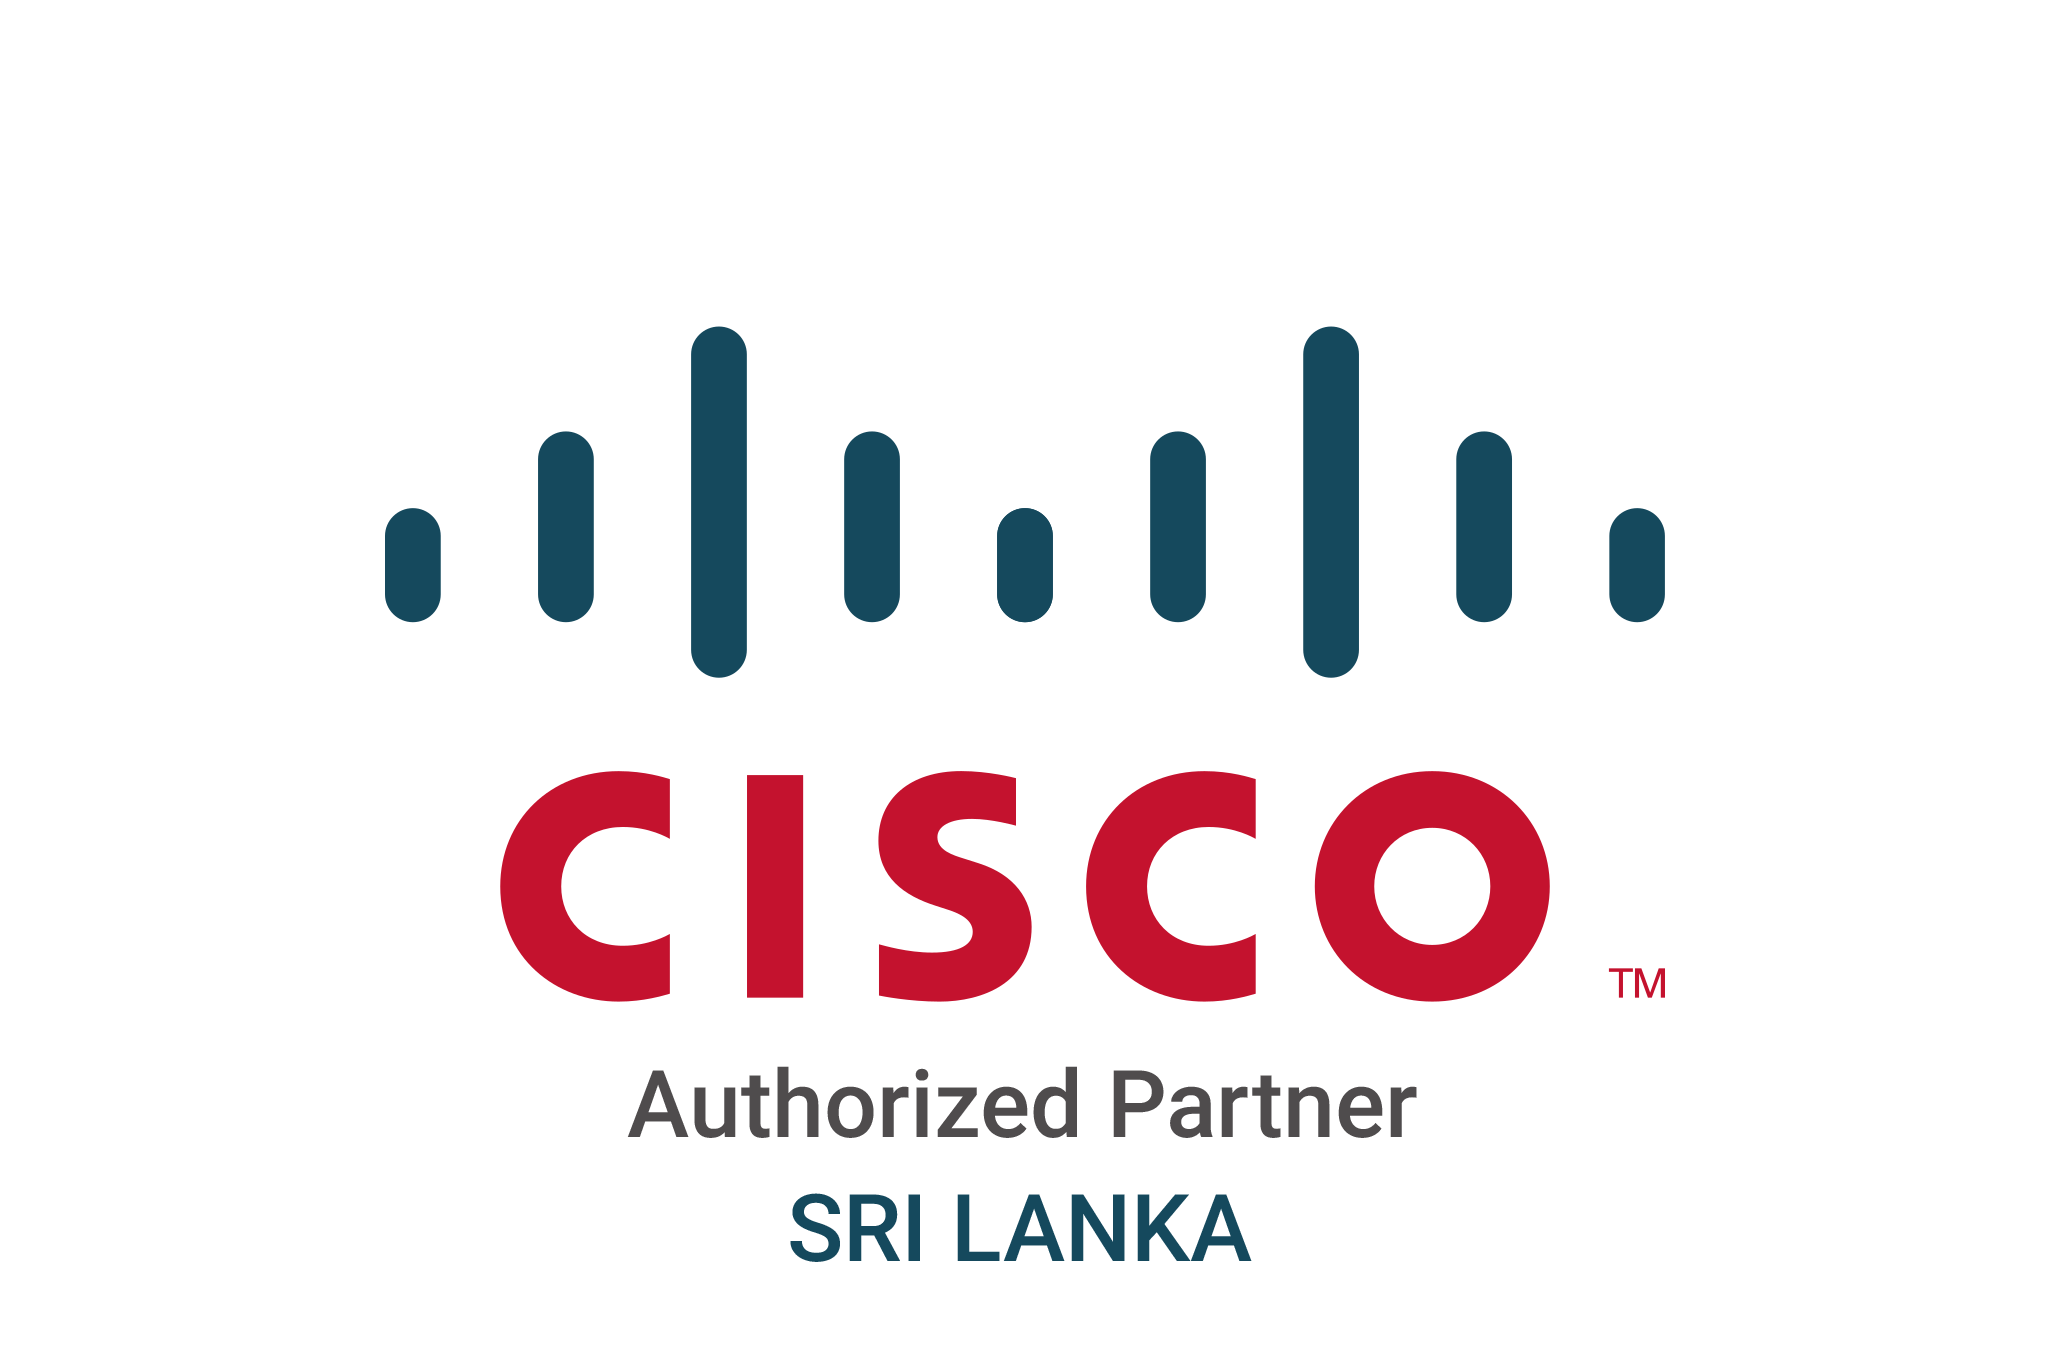 Cisco Sri Lanka